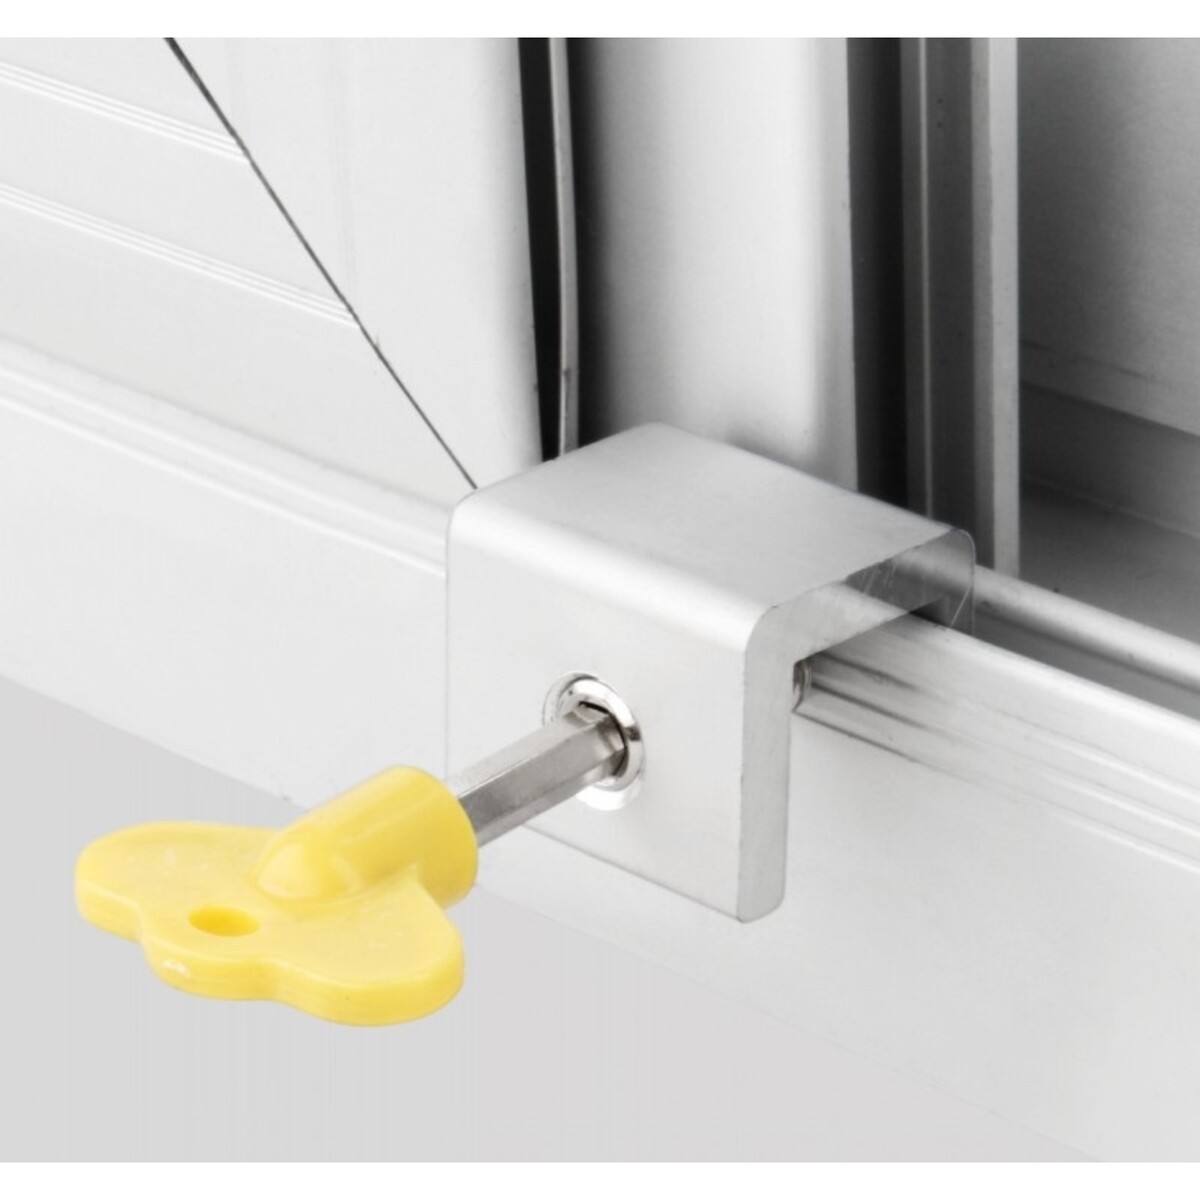 Блокиратор раздвижных дверей и окон, желтый, 10 мм блокиратор для раздвижных дверей и окон белый